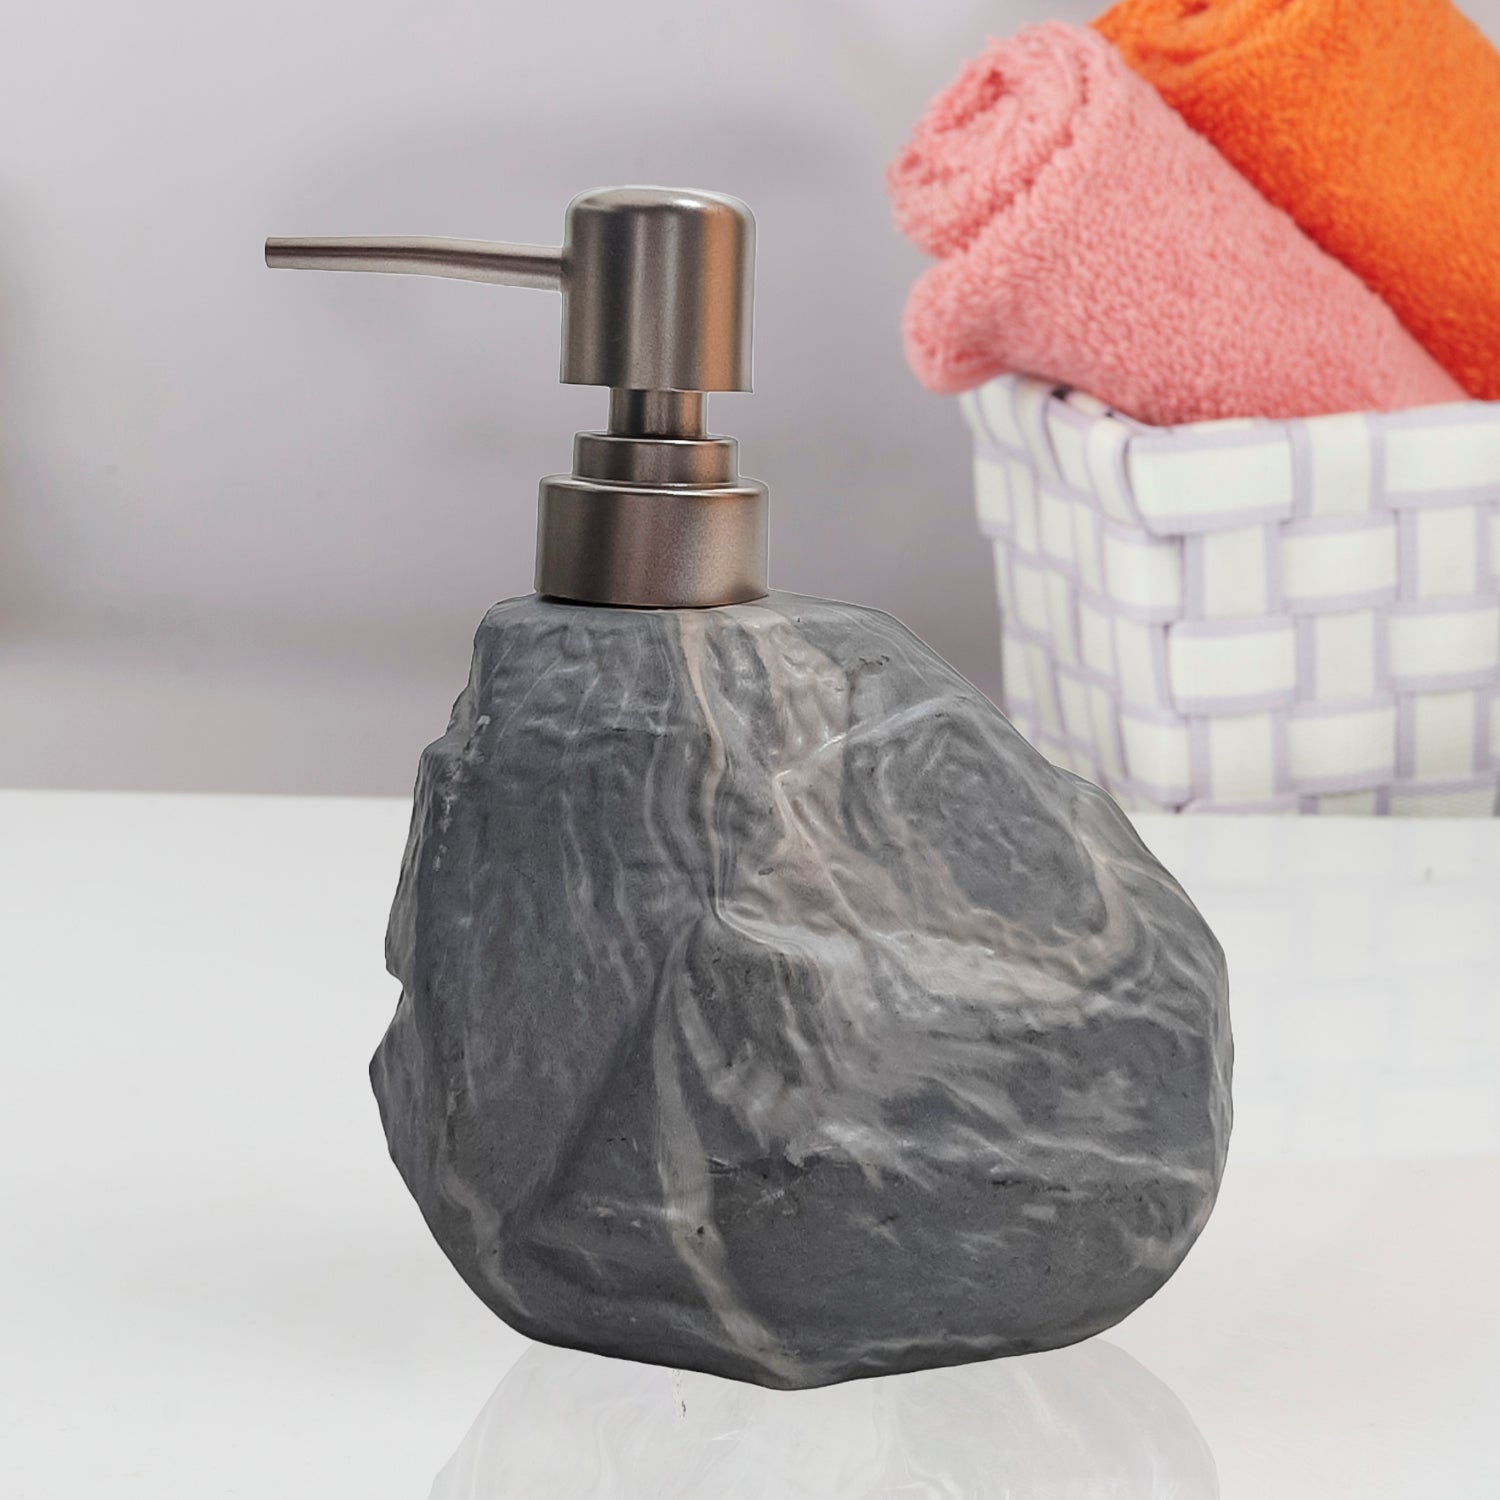 Ceramic Soap Dispenser liquid handwash pump for Bathroom, Set of 1, Beige (7949)